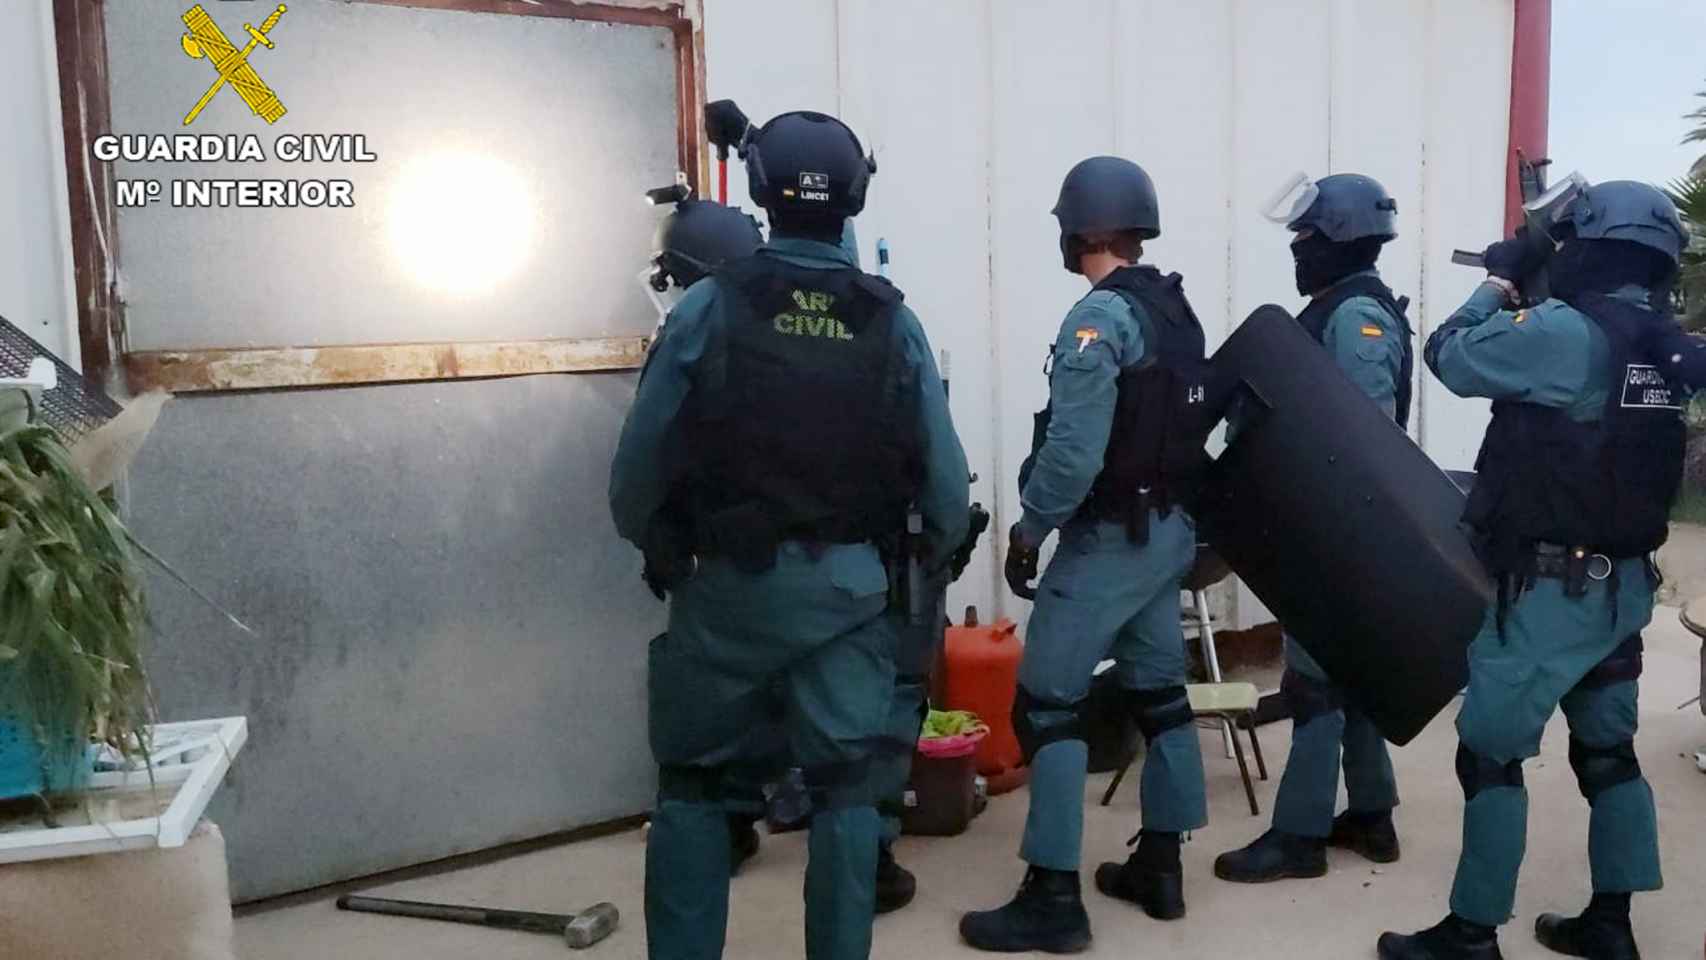 Los guardias civiles segundos antes de entrar en otro de los inmuebles que fueron registrados.